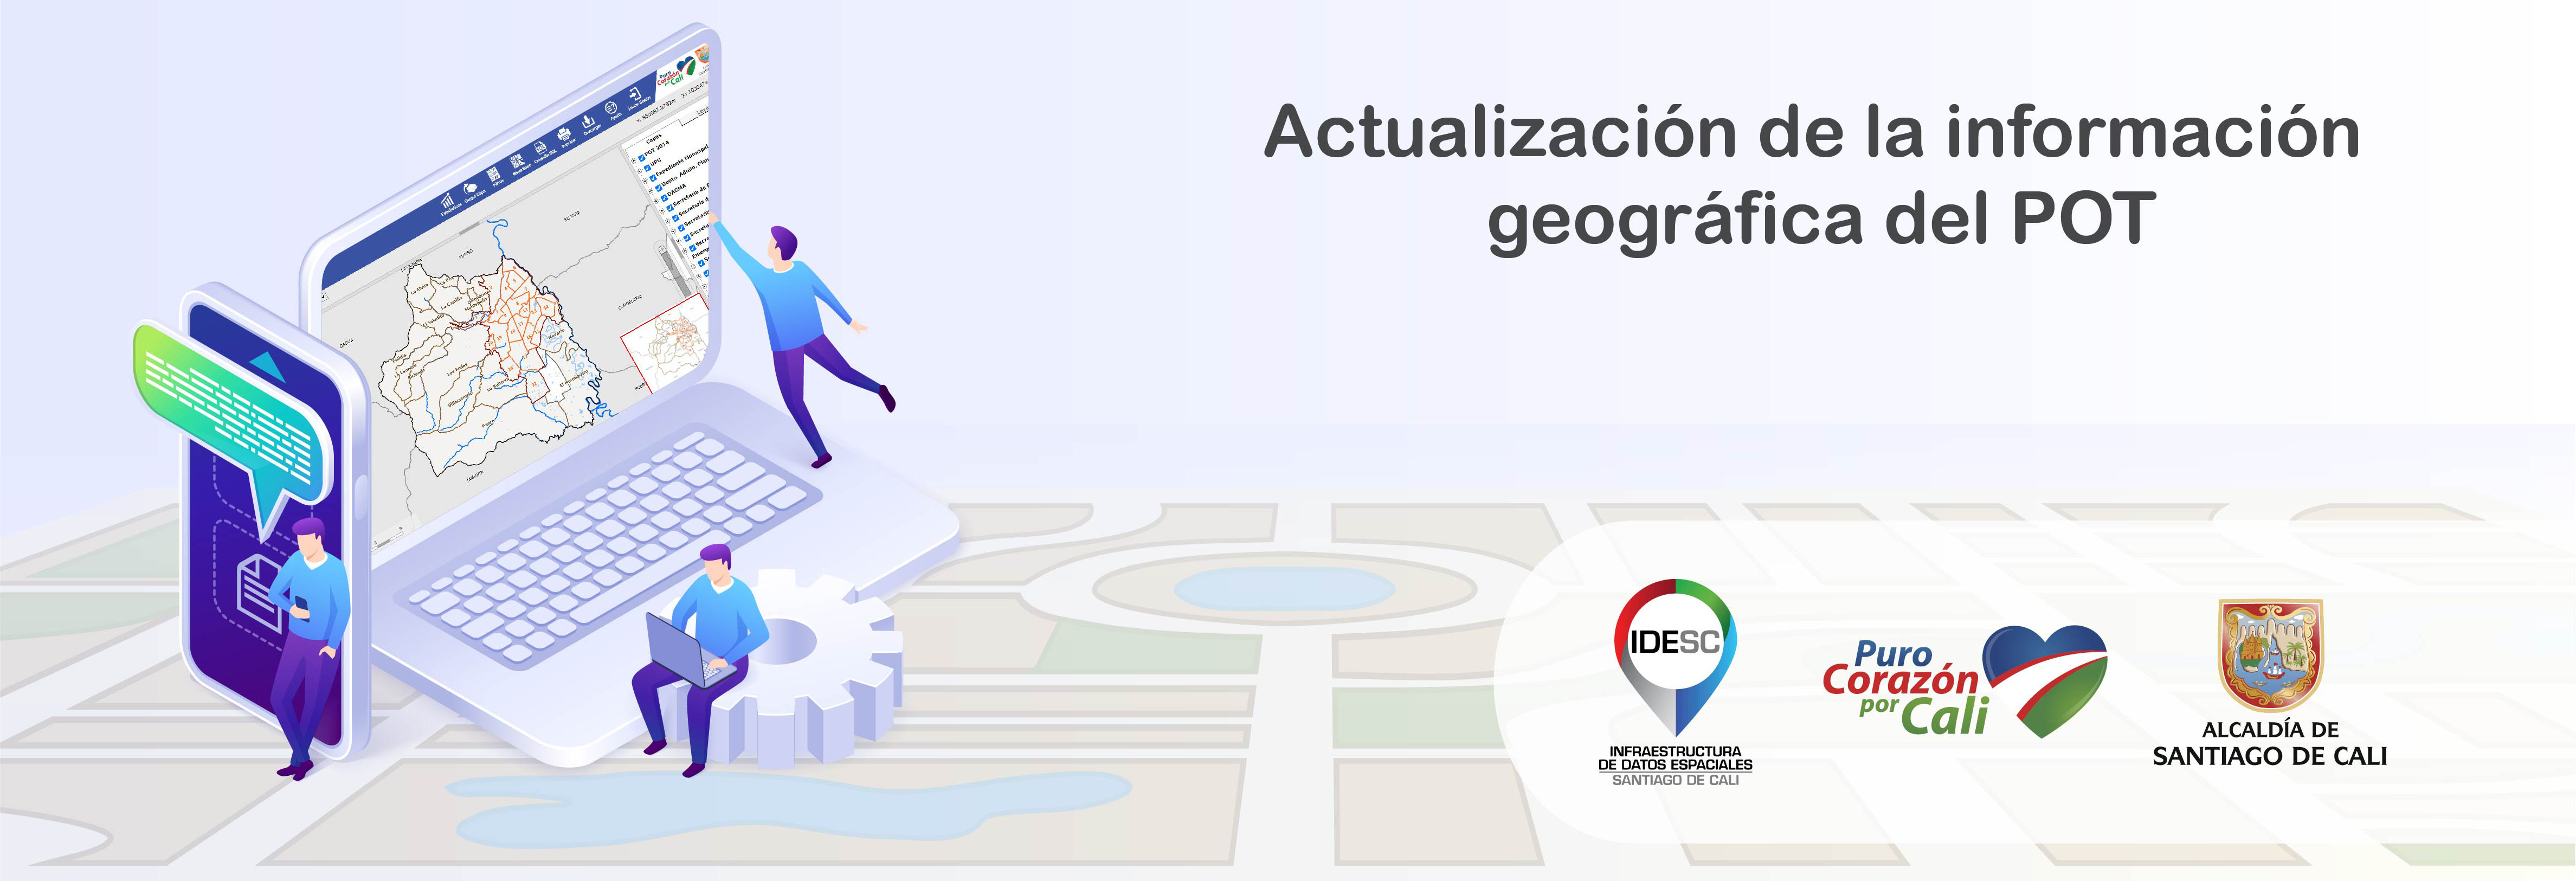 Pieza gráfica donde se muestra a tres personas alrededor de una computadora portátil consultando la información geográfica del POT a través del Geovisor IDESC y en la parte inferior derecha los logos institucionales.